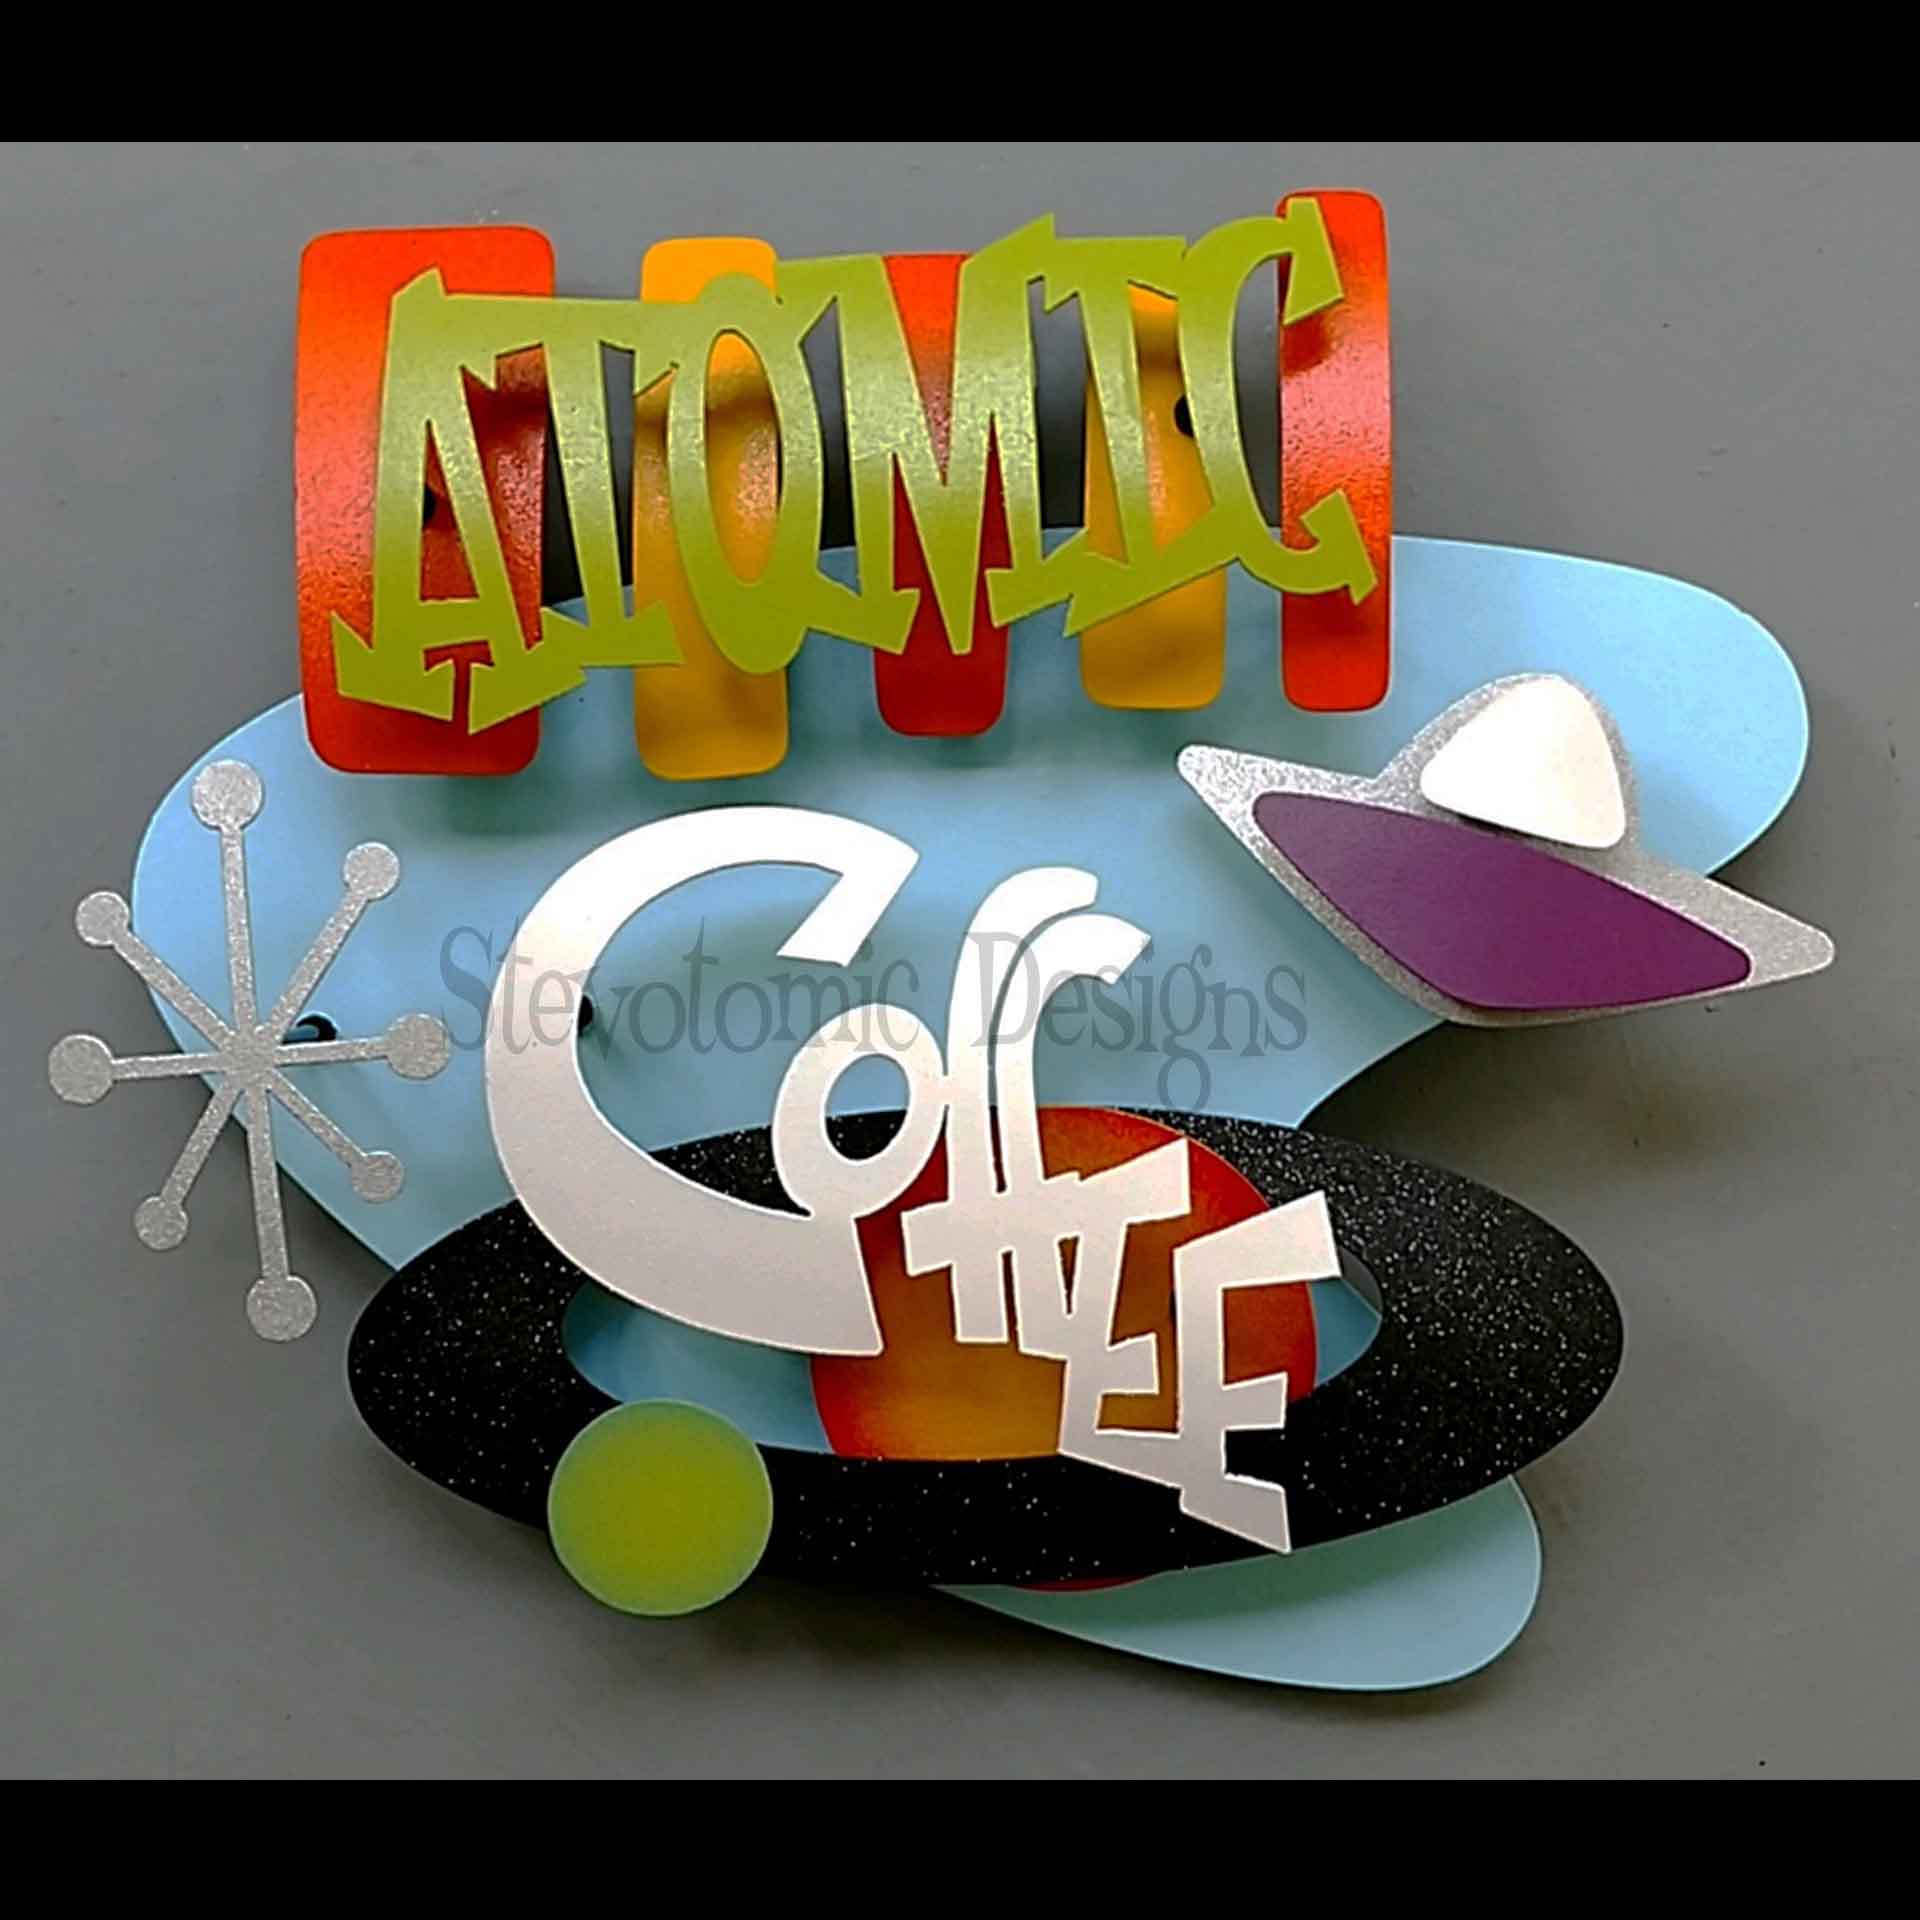 ATOMIC-COFFEE-2018_01